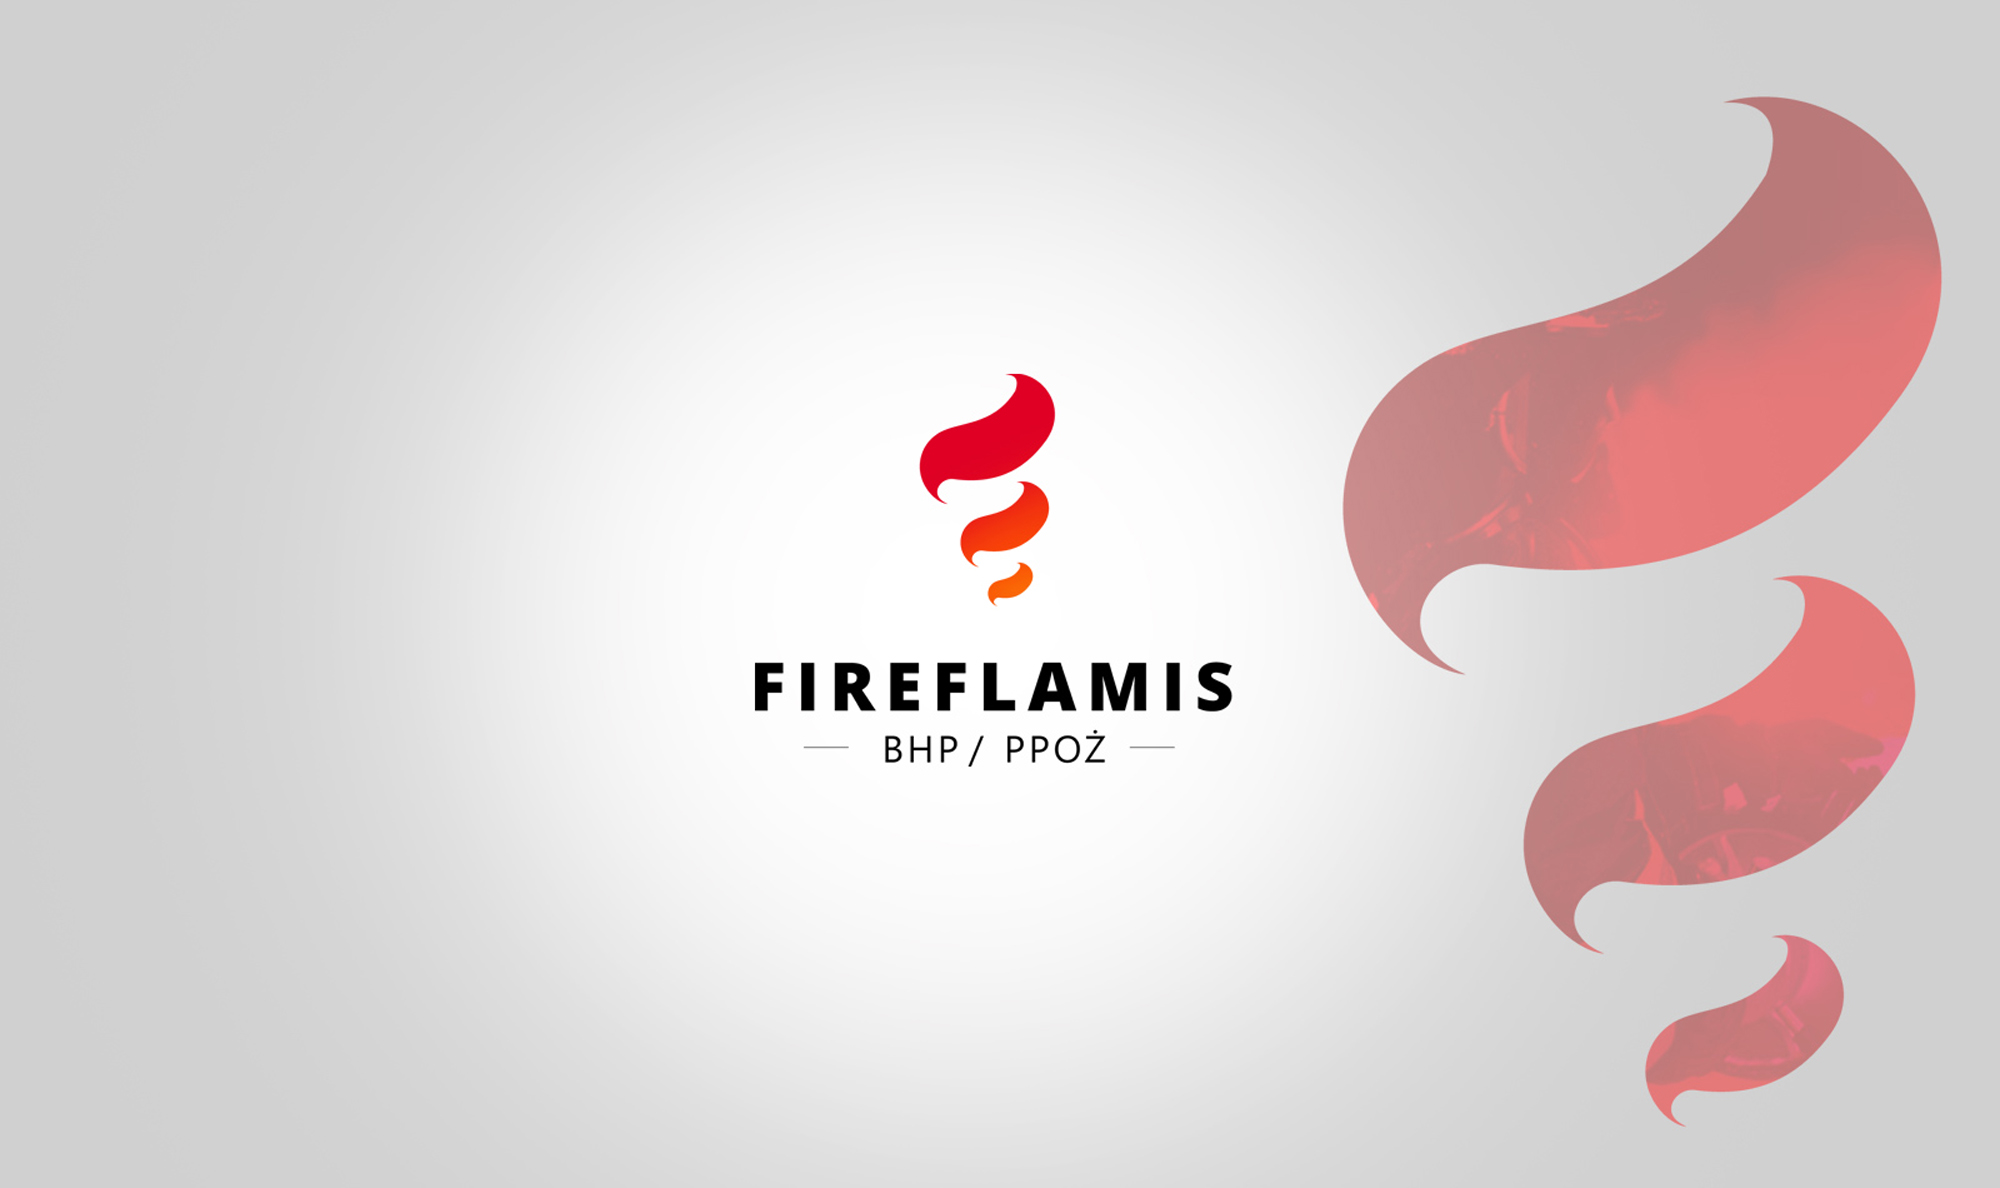 Fireflamis - BHP/PPOŻ - Szczecin. Shadowart projekt logo, reklama, projekt strony internetowej.